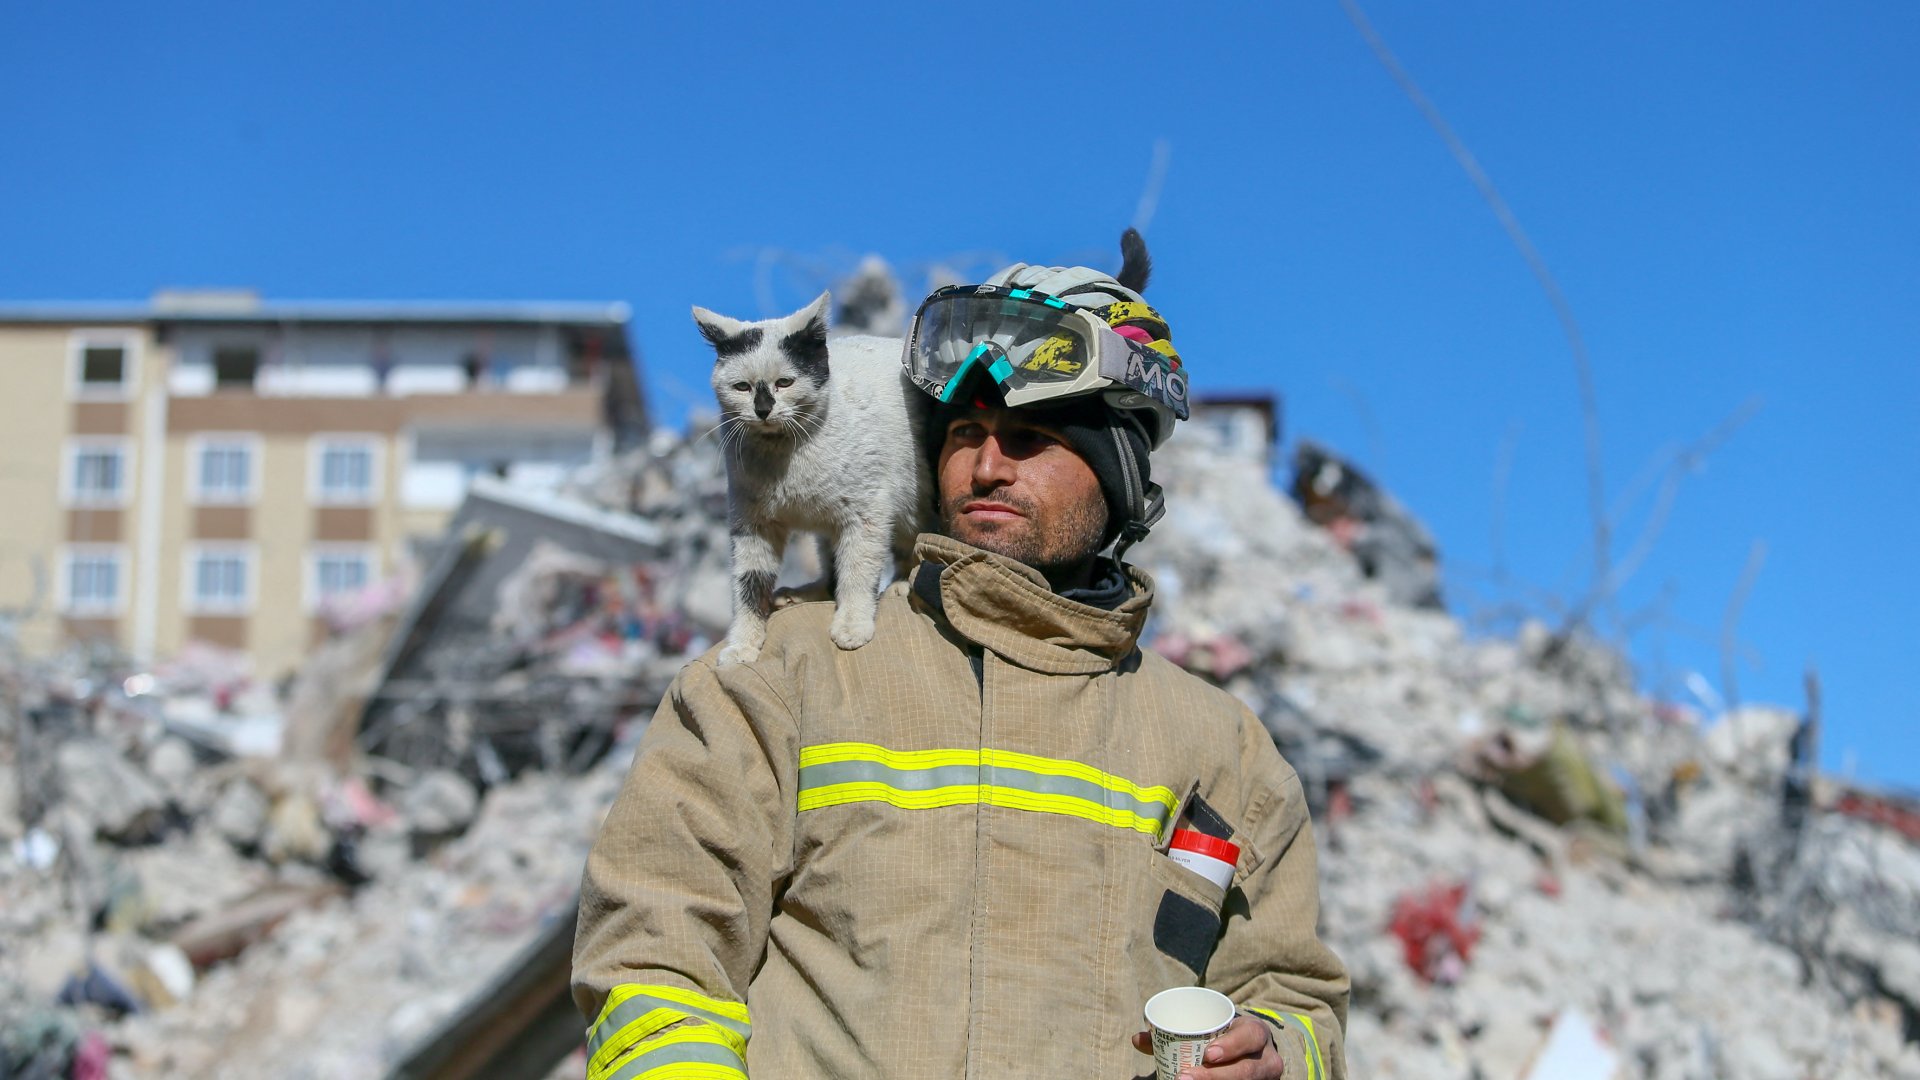 A 33 éves Ali Cakas tűzoltó és az Enkaz (Törmelék) nevű macska a törökországi Gaziantep városában 2023. február 14-én. A macskát a mardini tűzoltóság tagjai mentettek ki a romok alól a törökországi súlyos földrengés után